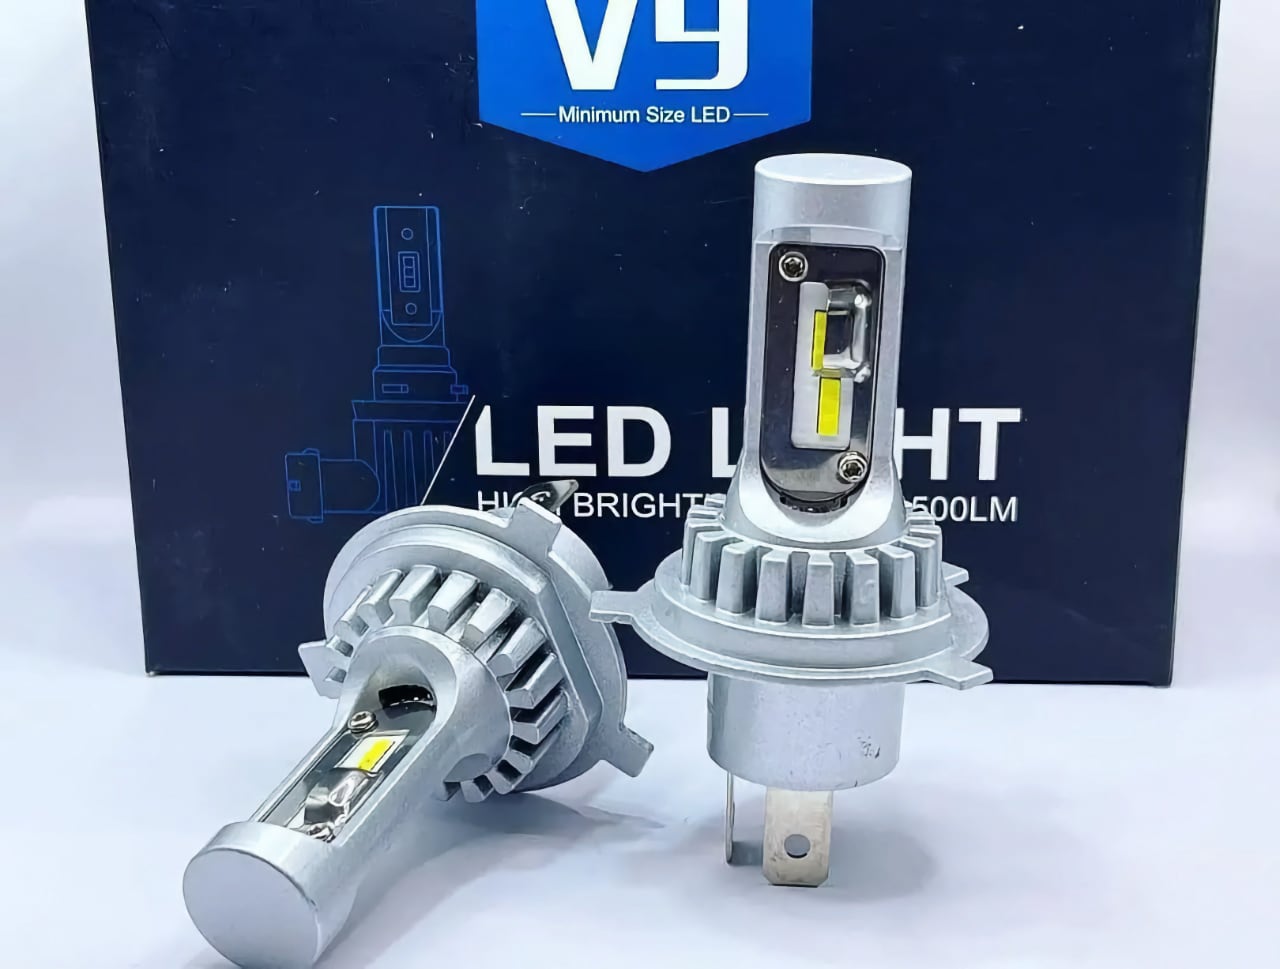 LED лампи для автомобіля, а також коробка для їх упаковки з написом "LED LIGHT" та вказівкою яскравості "H6 BRIGHT 500LM